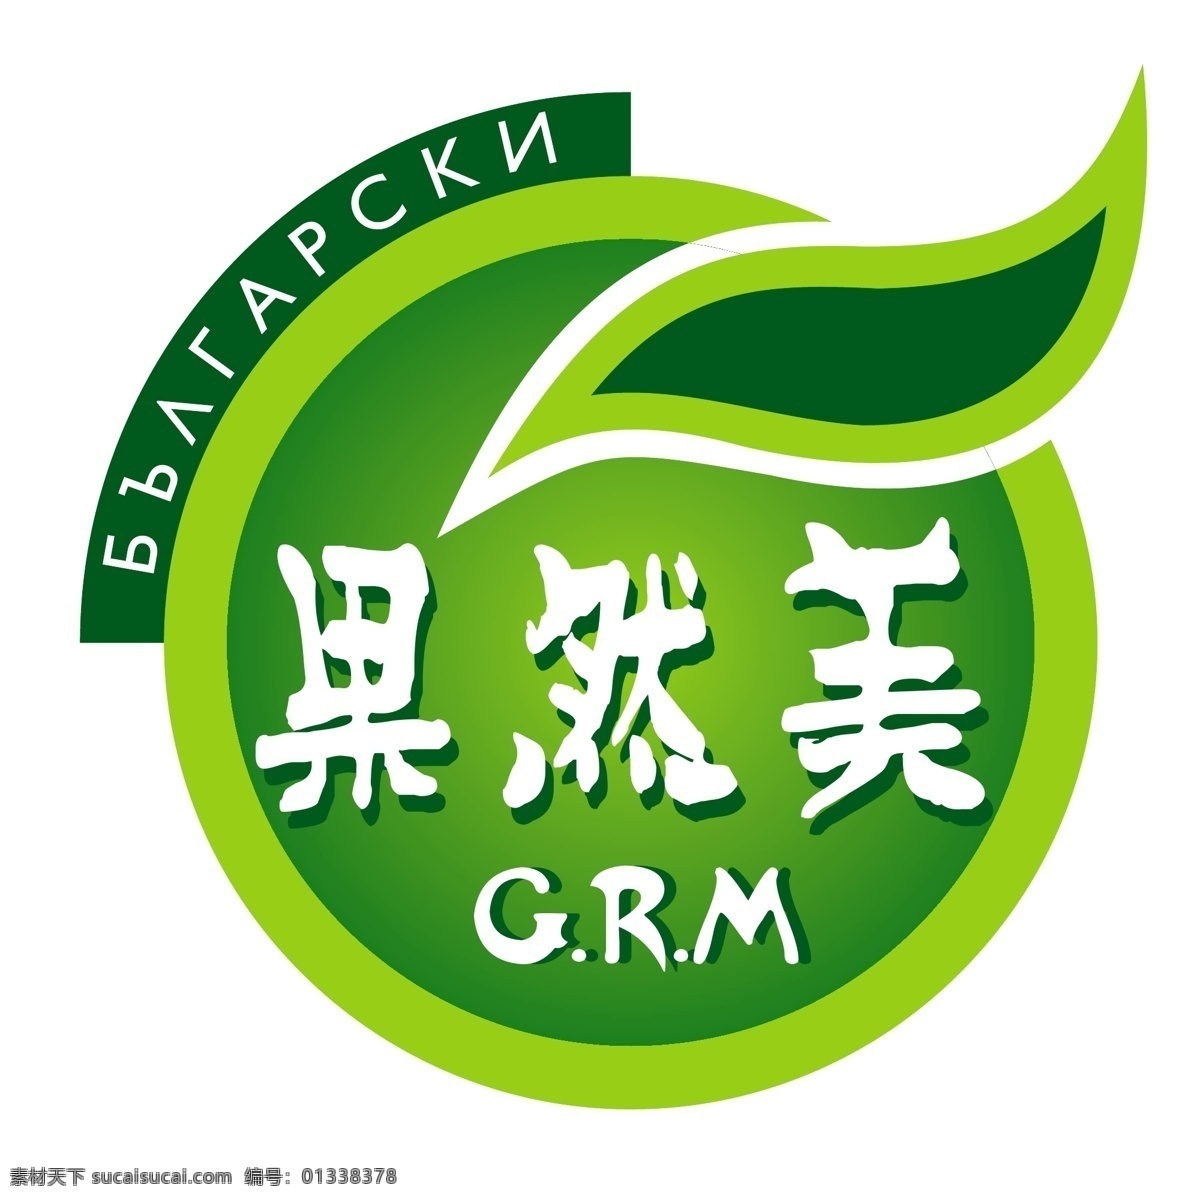 水果 生鲜 类 logo 商品logo 绿色 叶子 冰饮奶茶品牌 企业 标志 标识标志图标 矢量